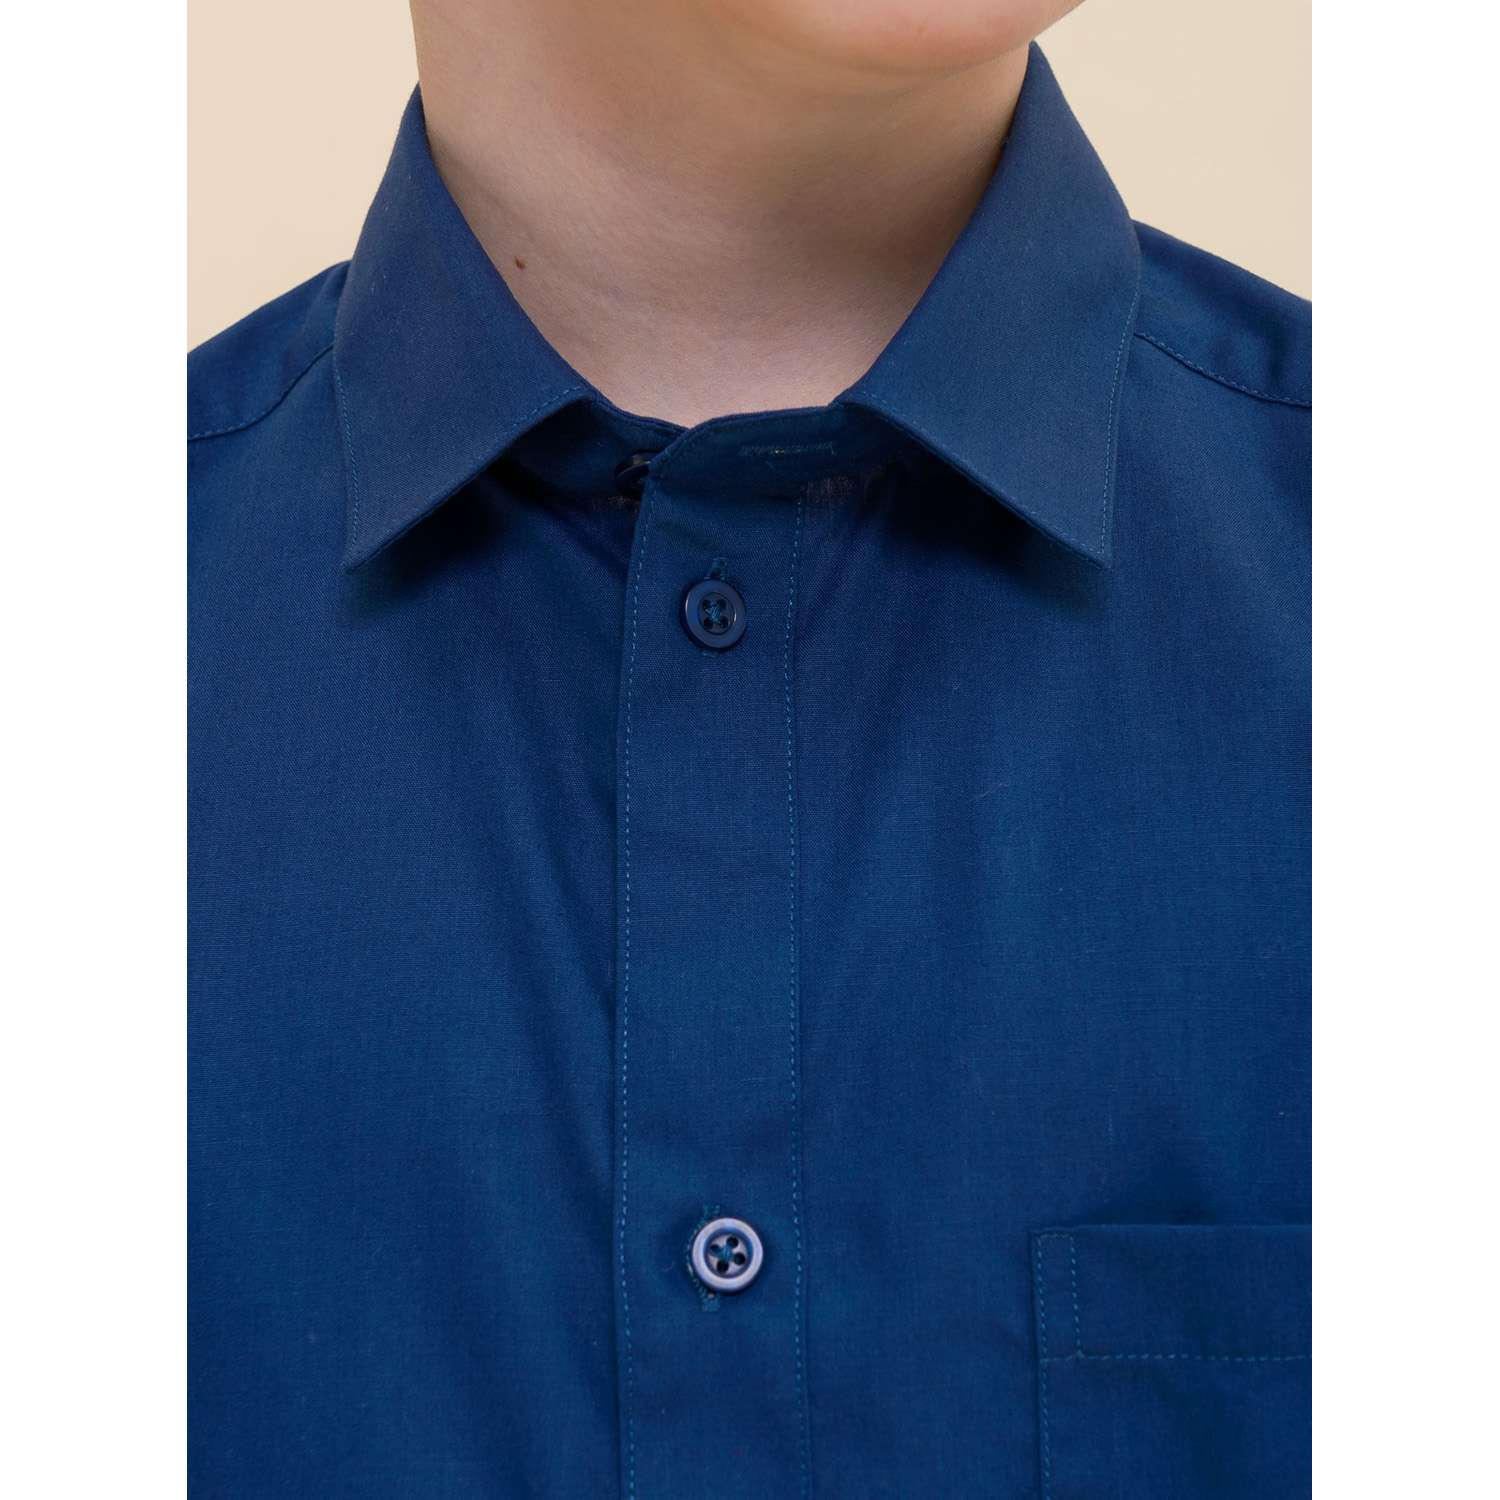 Рубашка PELICAN BWCJ8046/Синий(41) - фото 4